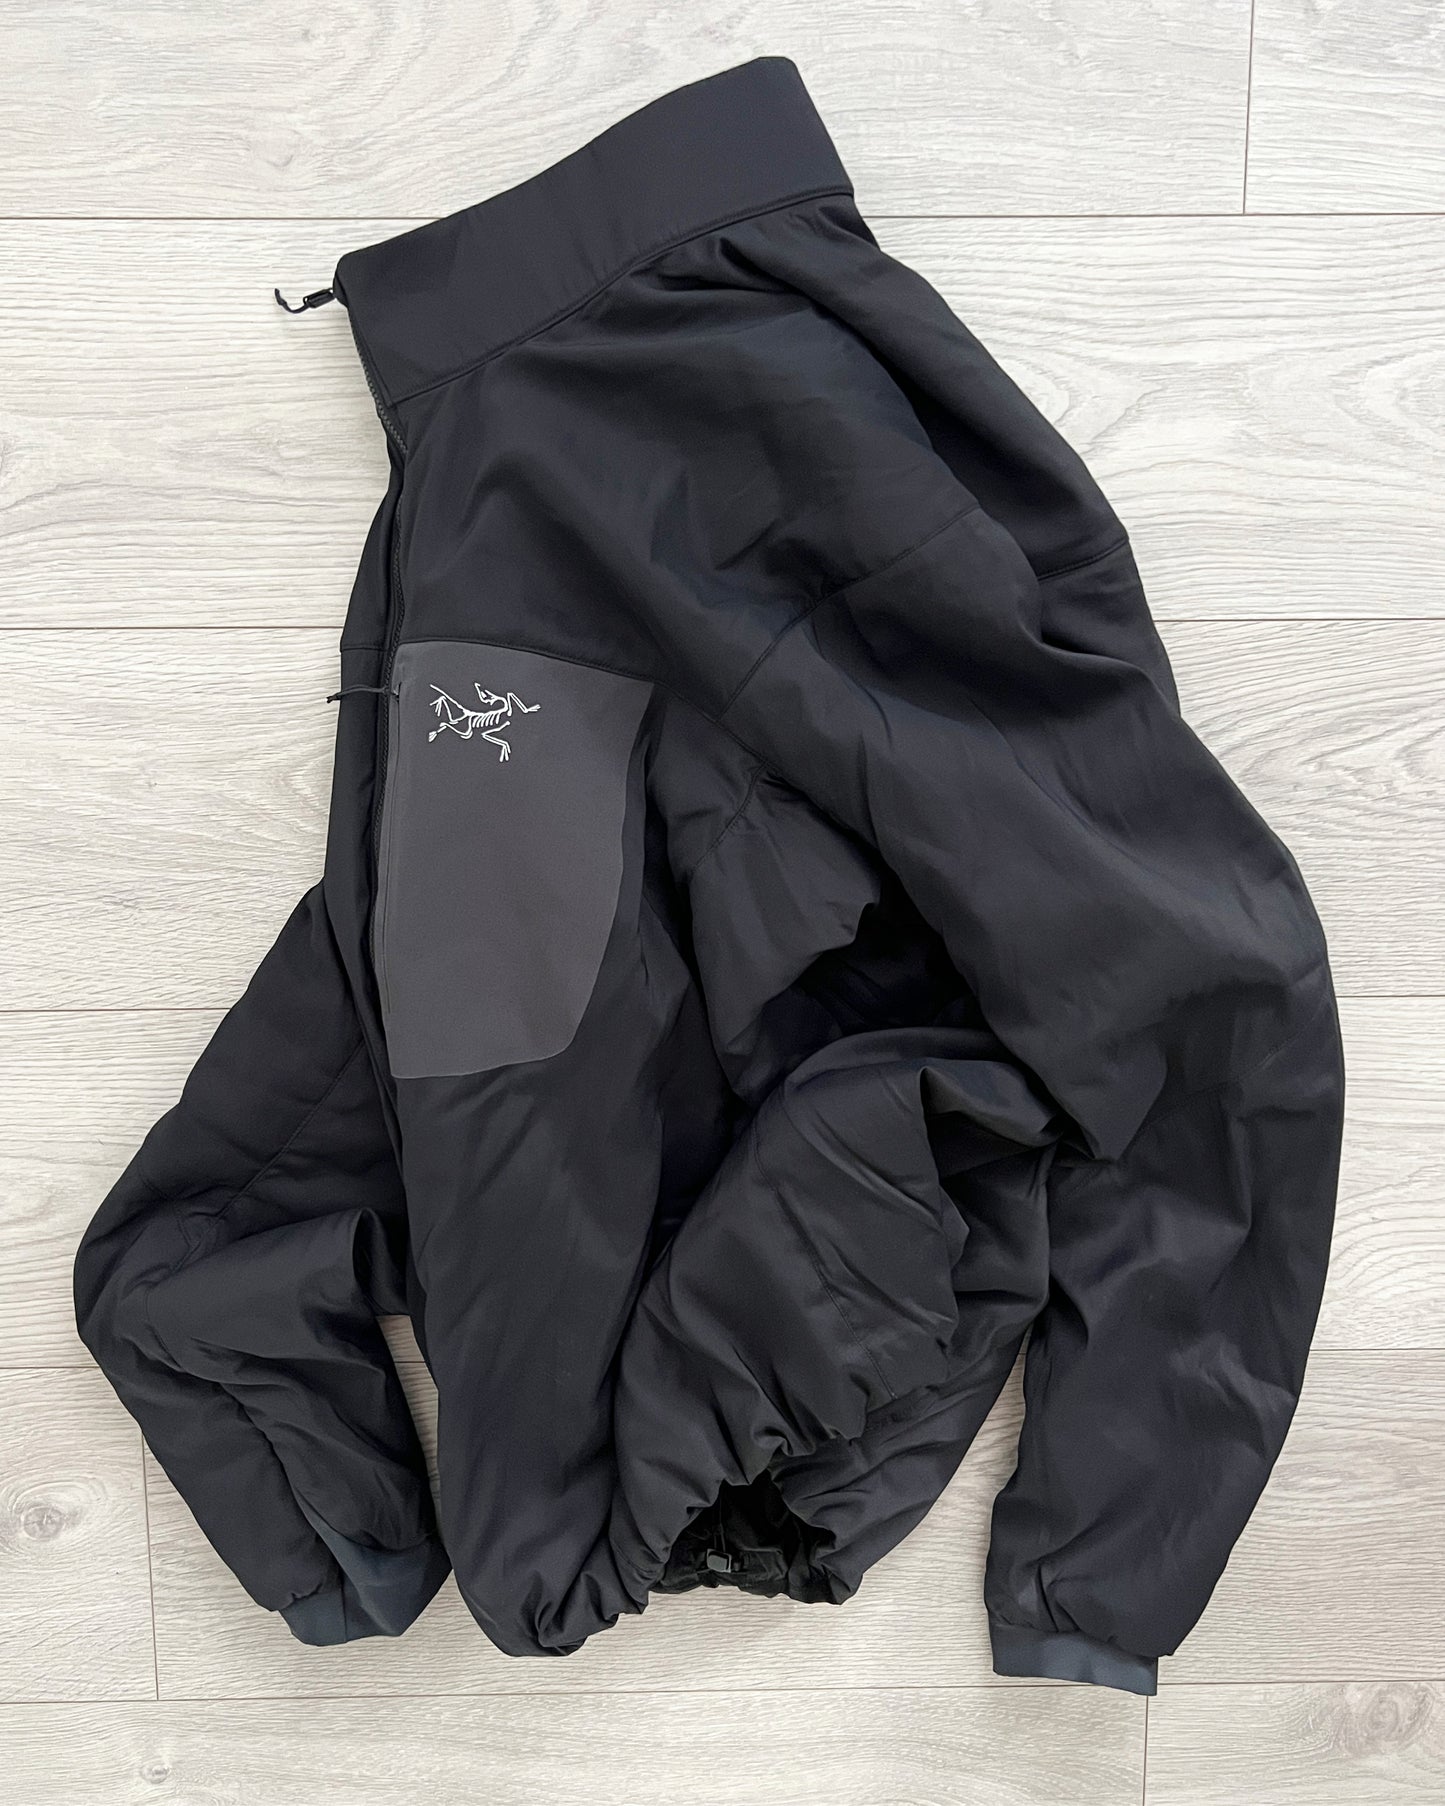 Arcteryx Proton LT Insulated Jacket - Size XL